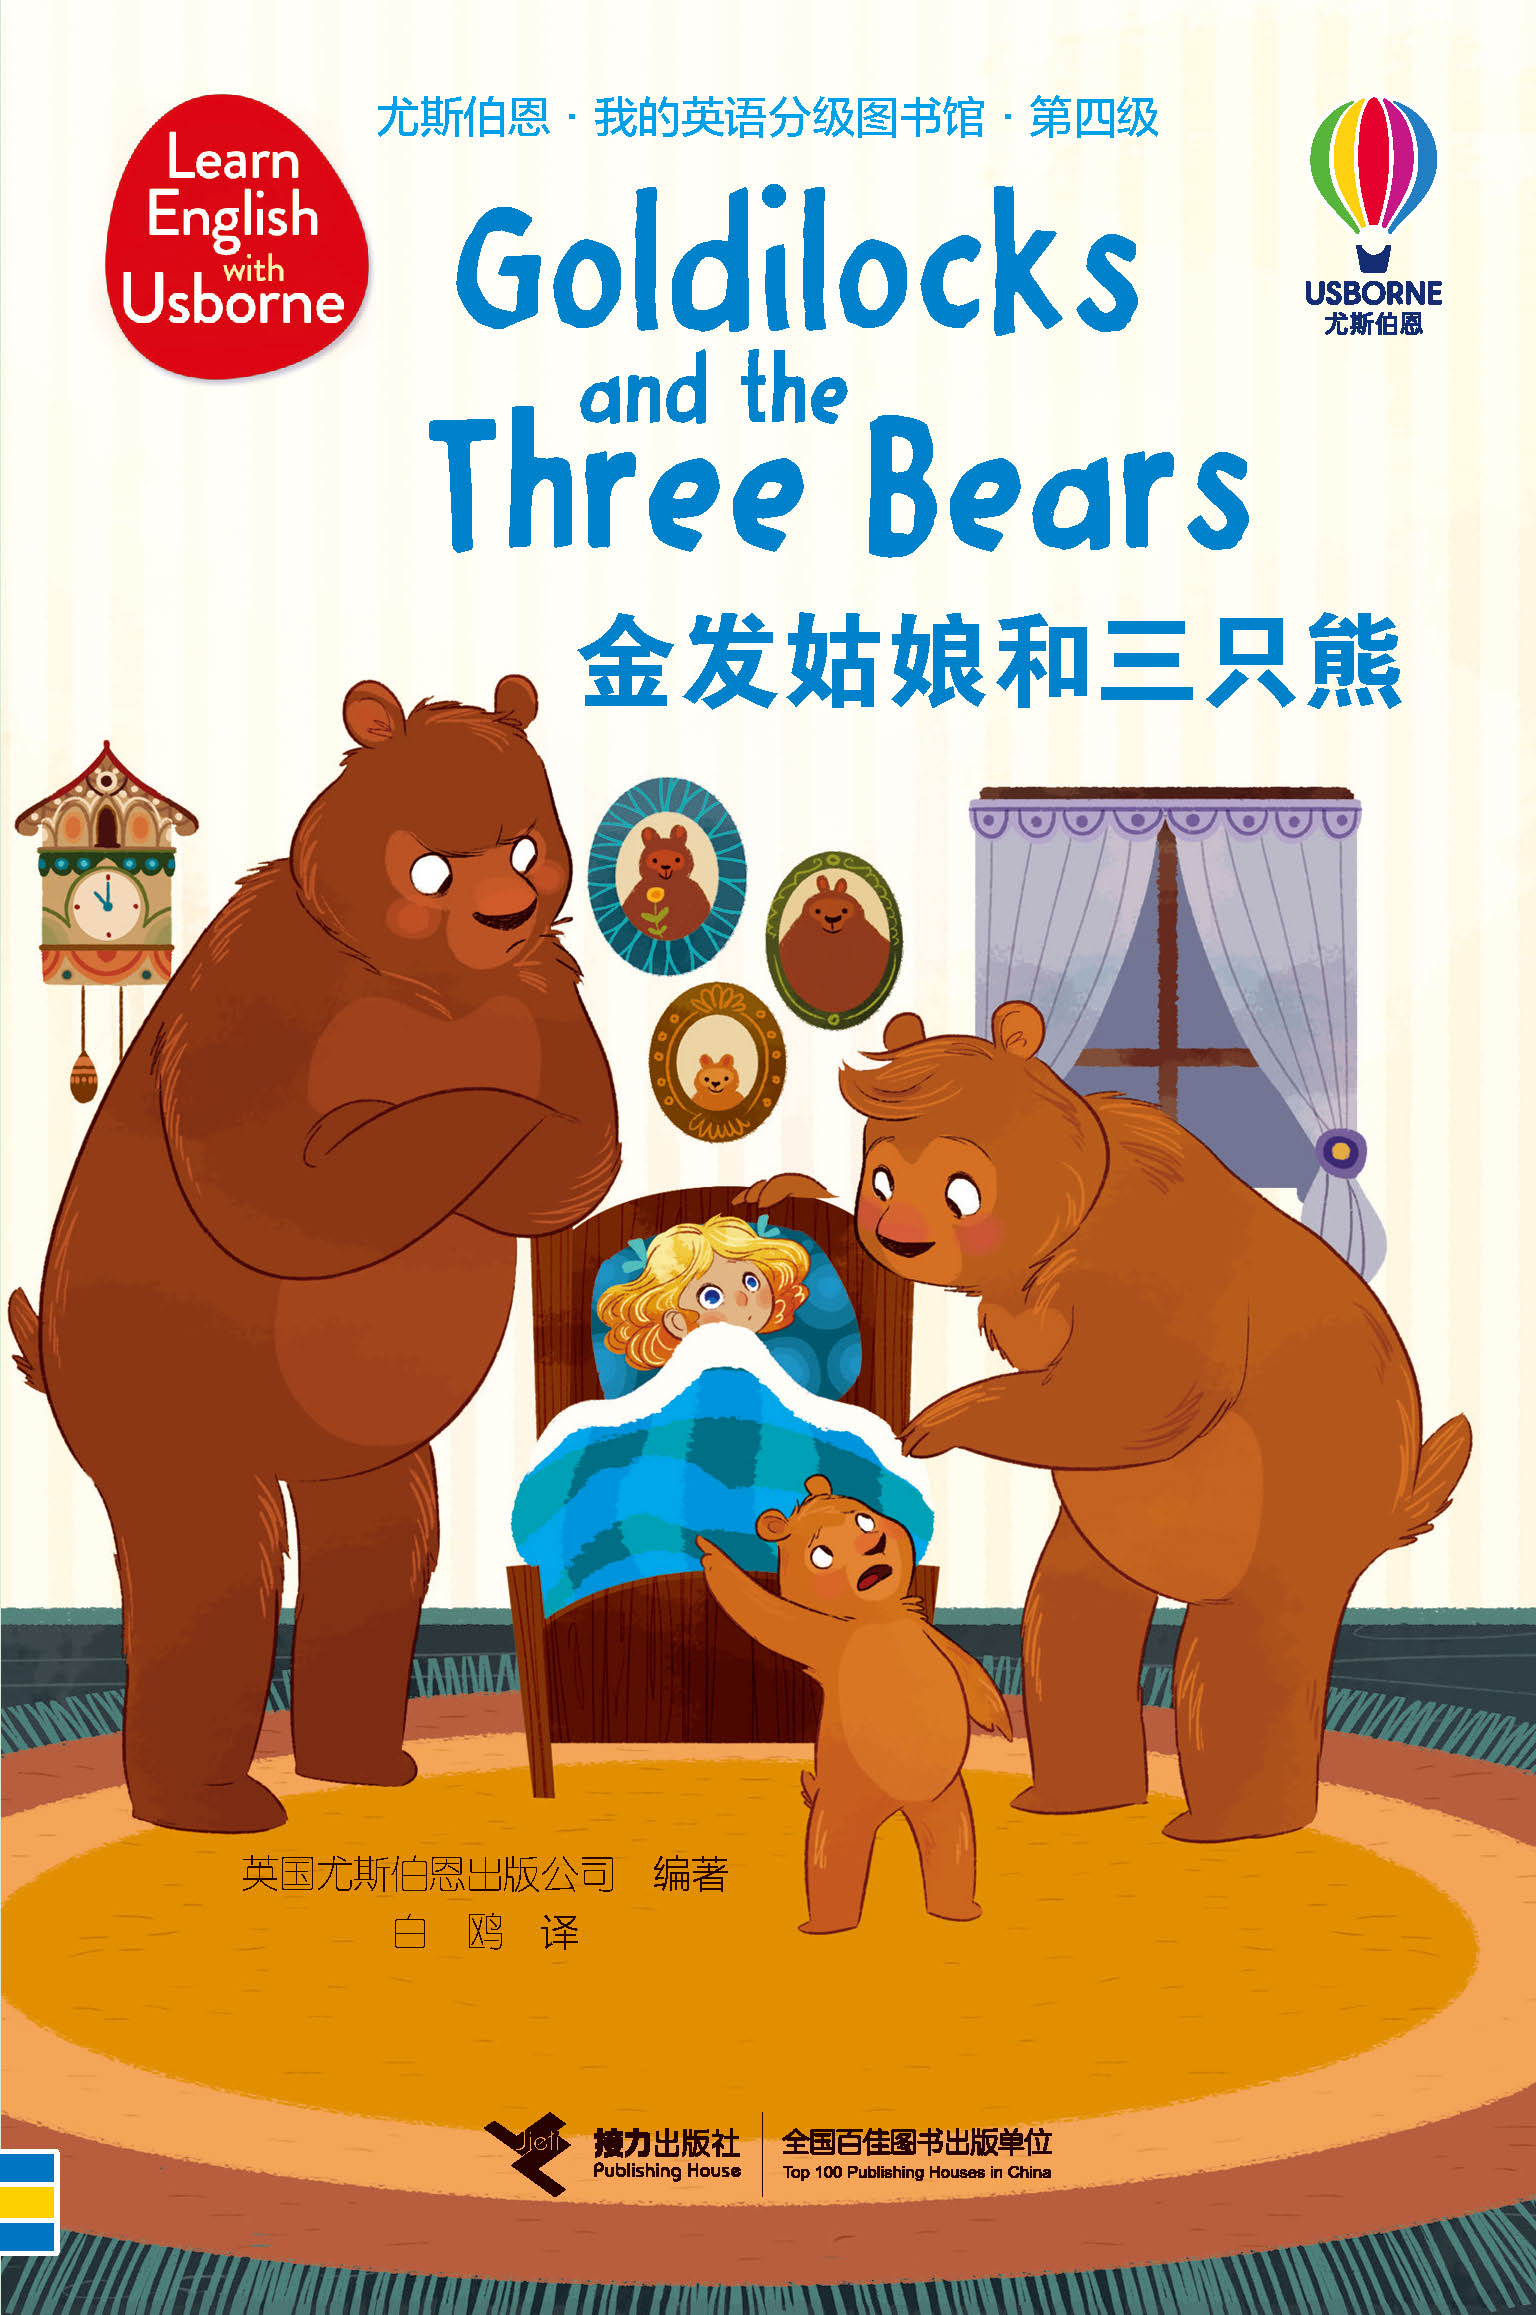 尤斯伯恩·我的英语分级图书馆·第四级·金发姑娘和三只熊